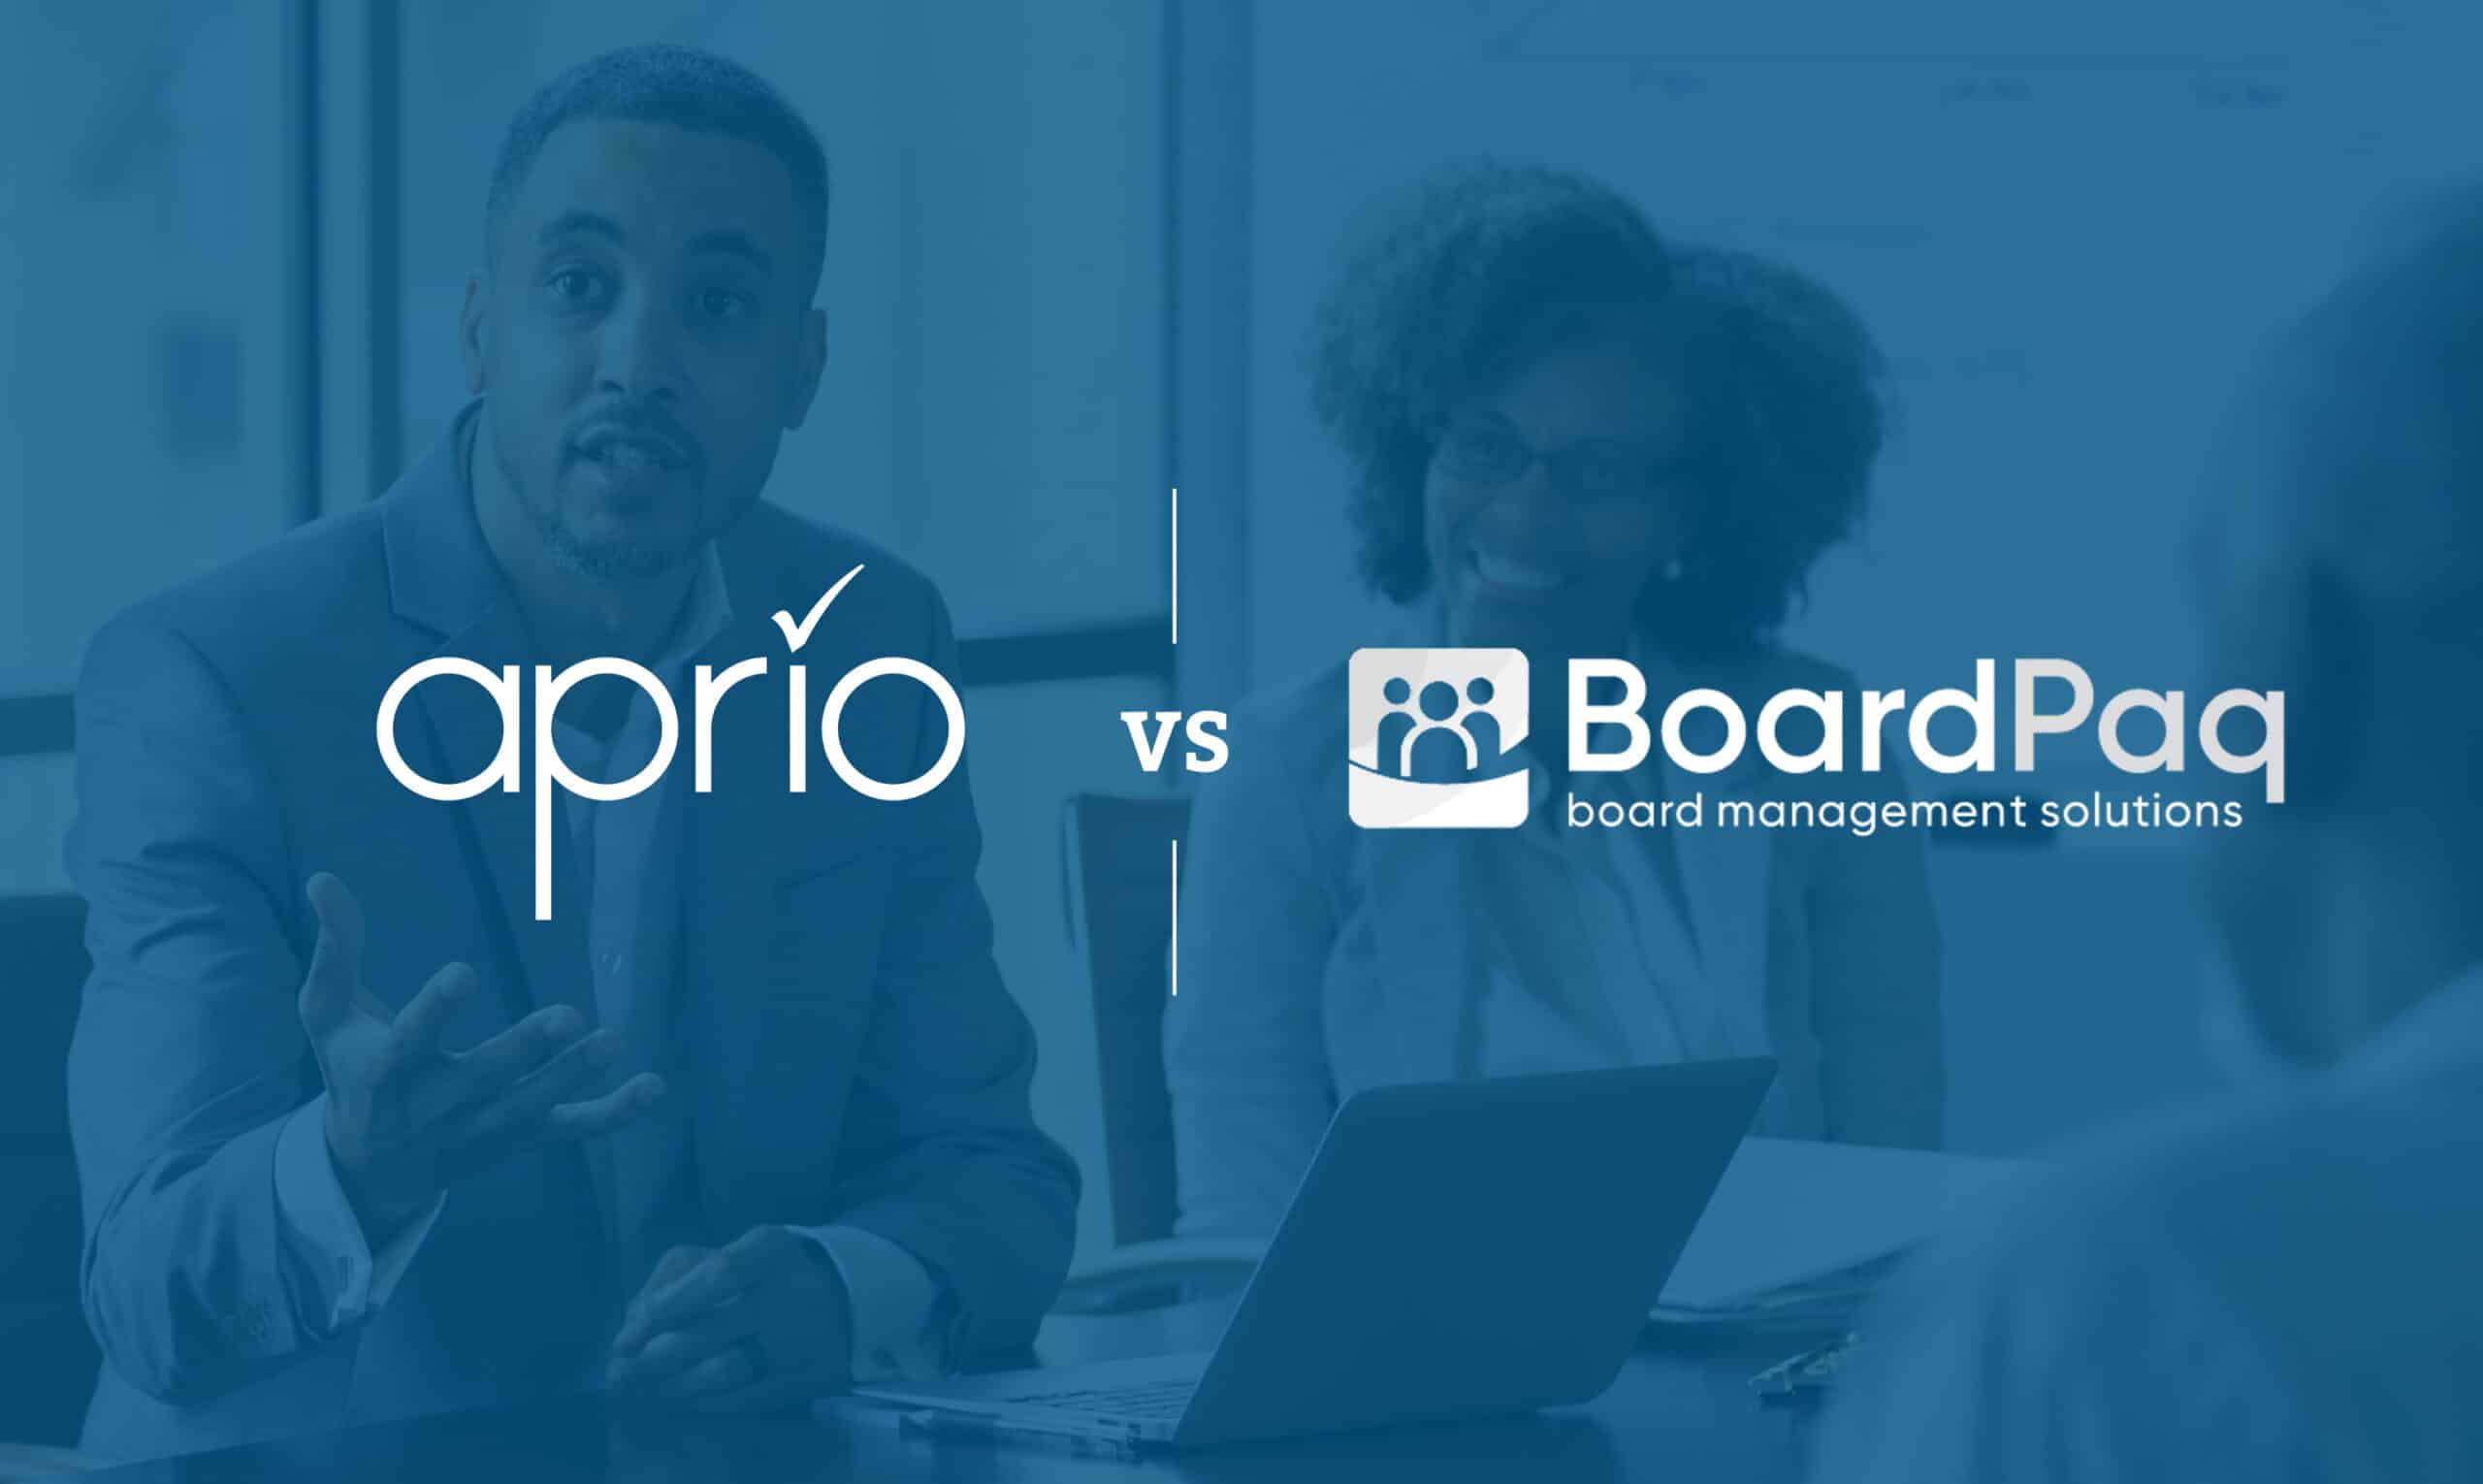 Board portal comparison – Aprio vs. BoardPaq